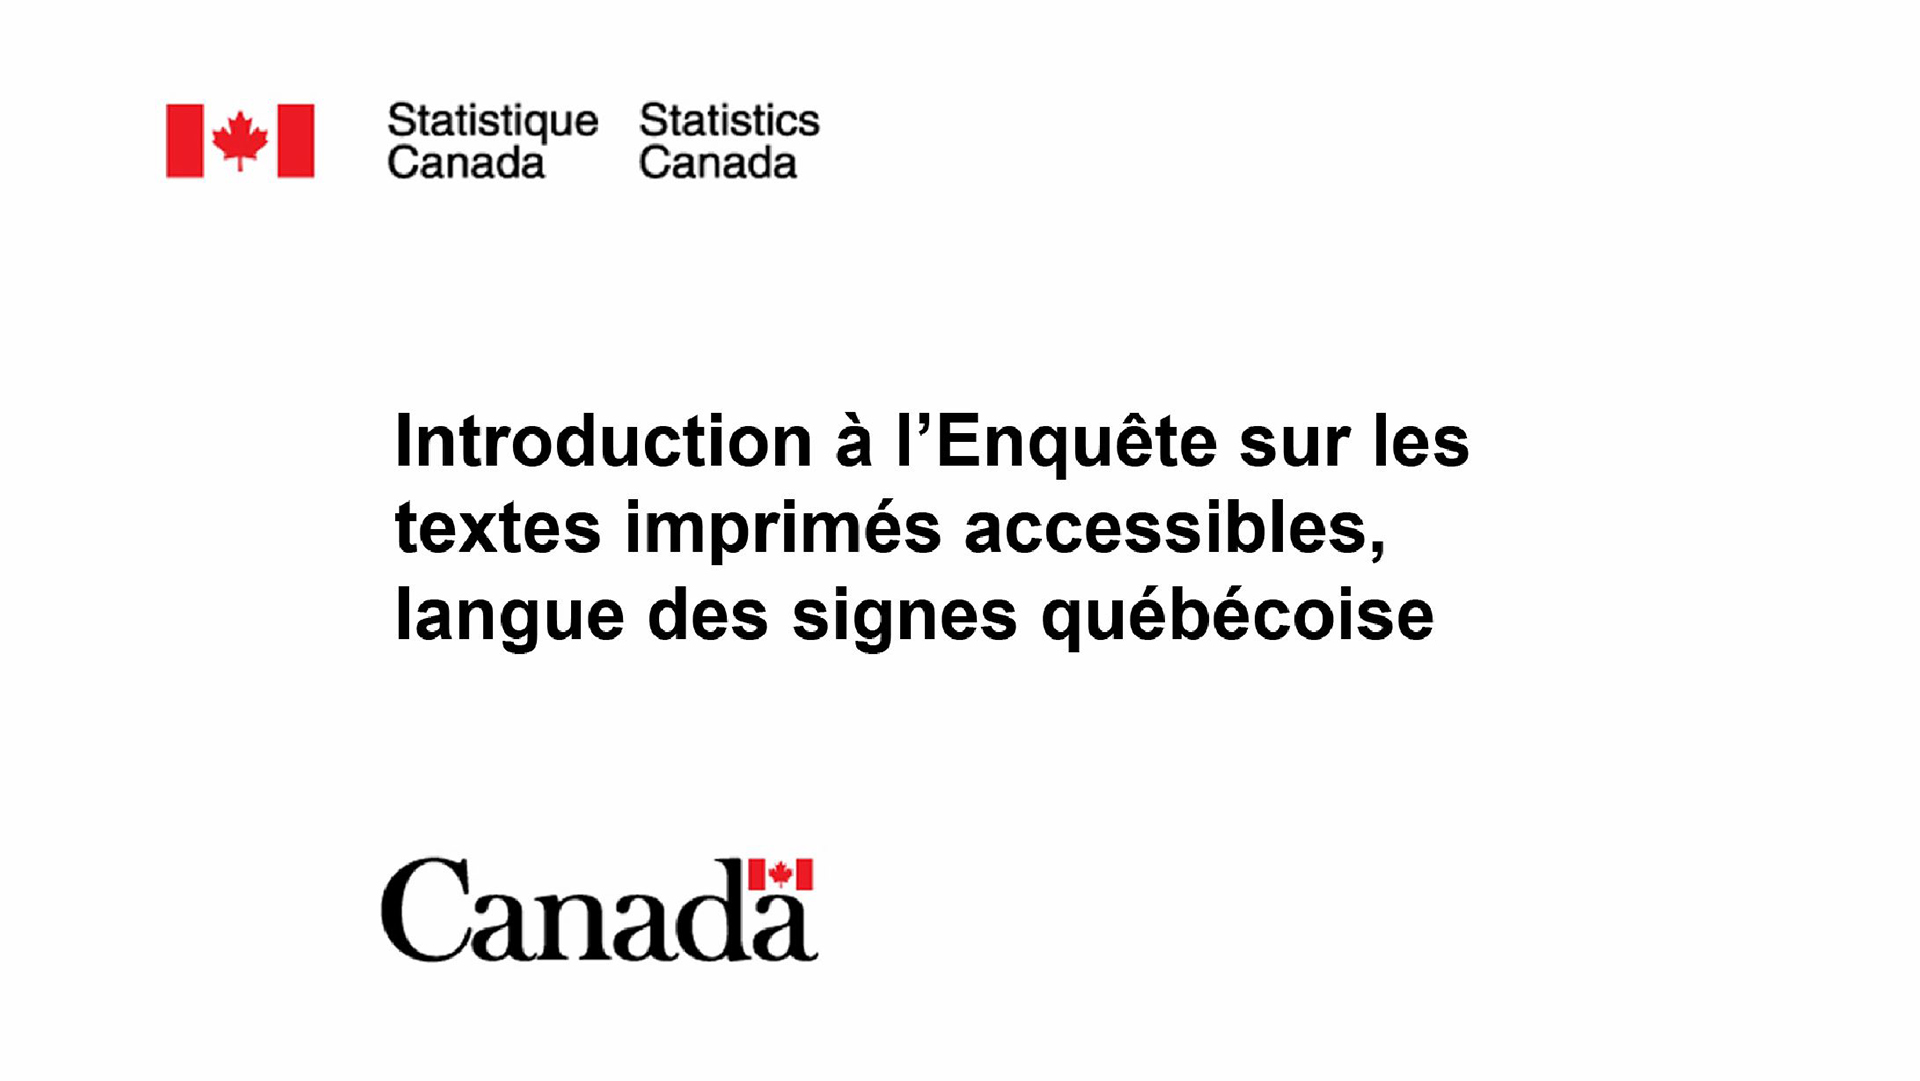 Introduction à l'Enquête sur les textes imprimés accessibles, langue des signes québécoise